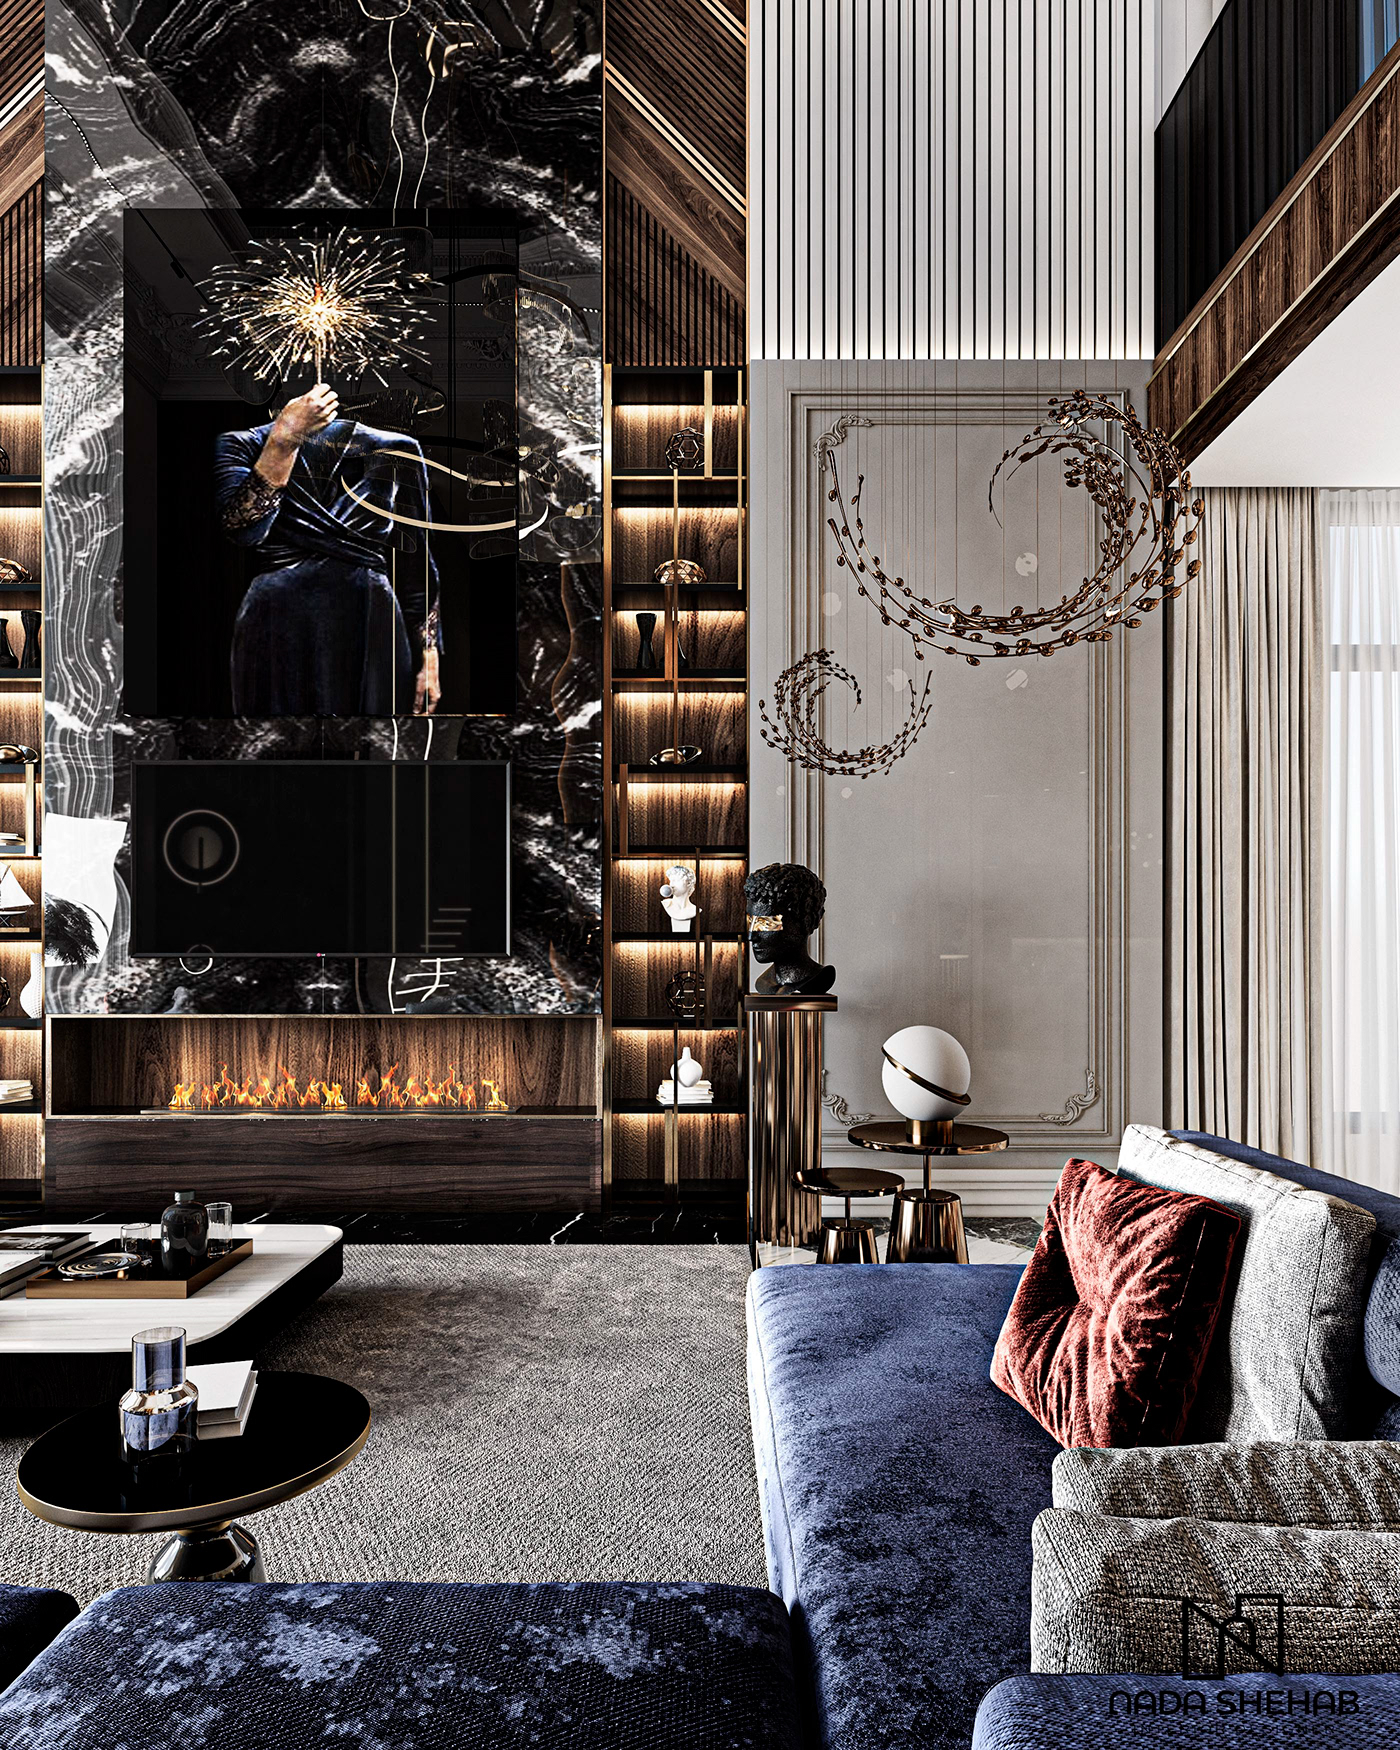 architecture CGI decor dubai furniture Interior interiordesign luxury Luxury Design Photography 